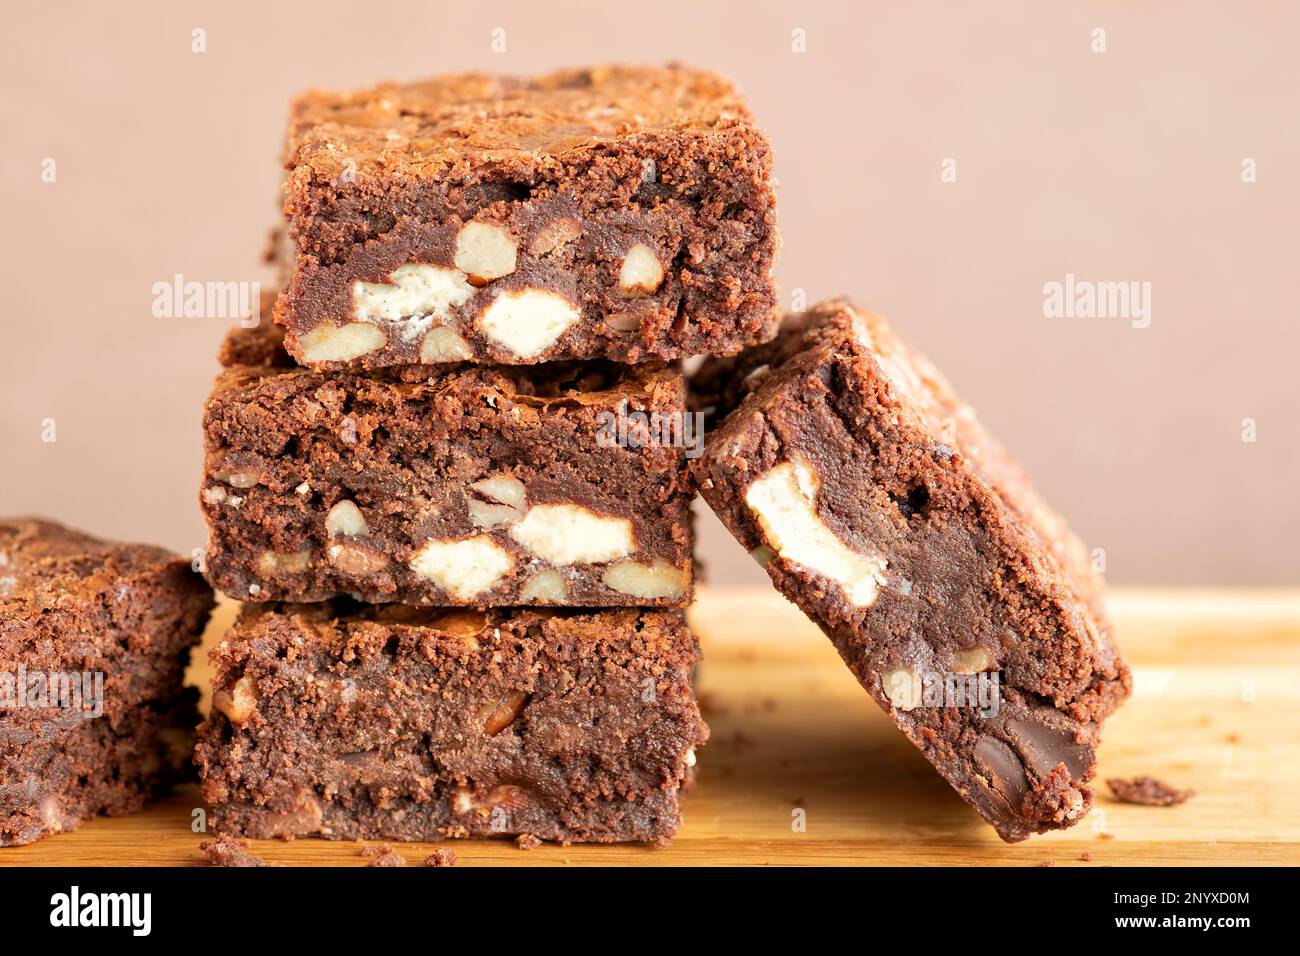 Eine Charge frisch gebackener dreifach-Schokoladen-Brownies auf einer Holzplatte. Die Brownies sind noch warm und klebrig. Ein Genuss Stockfoto